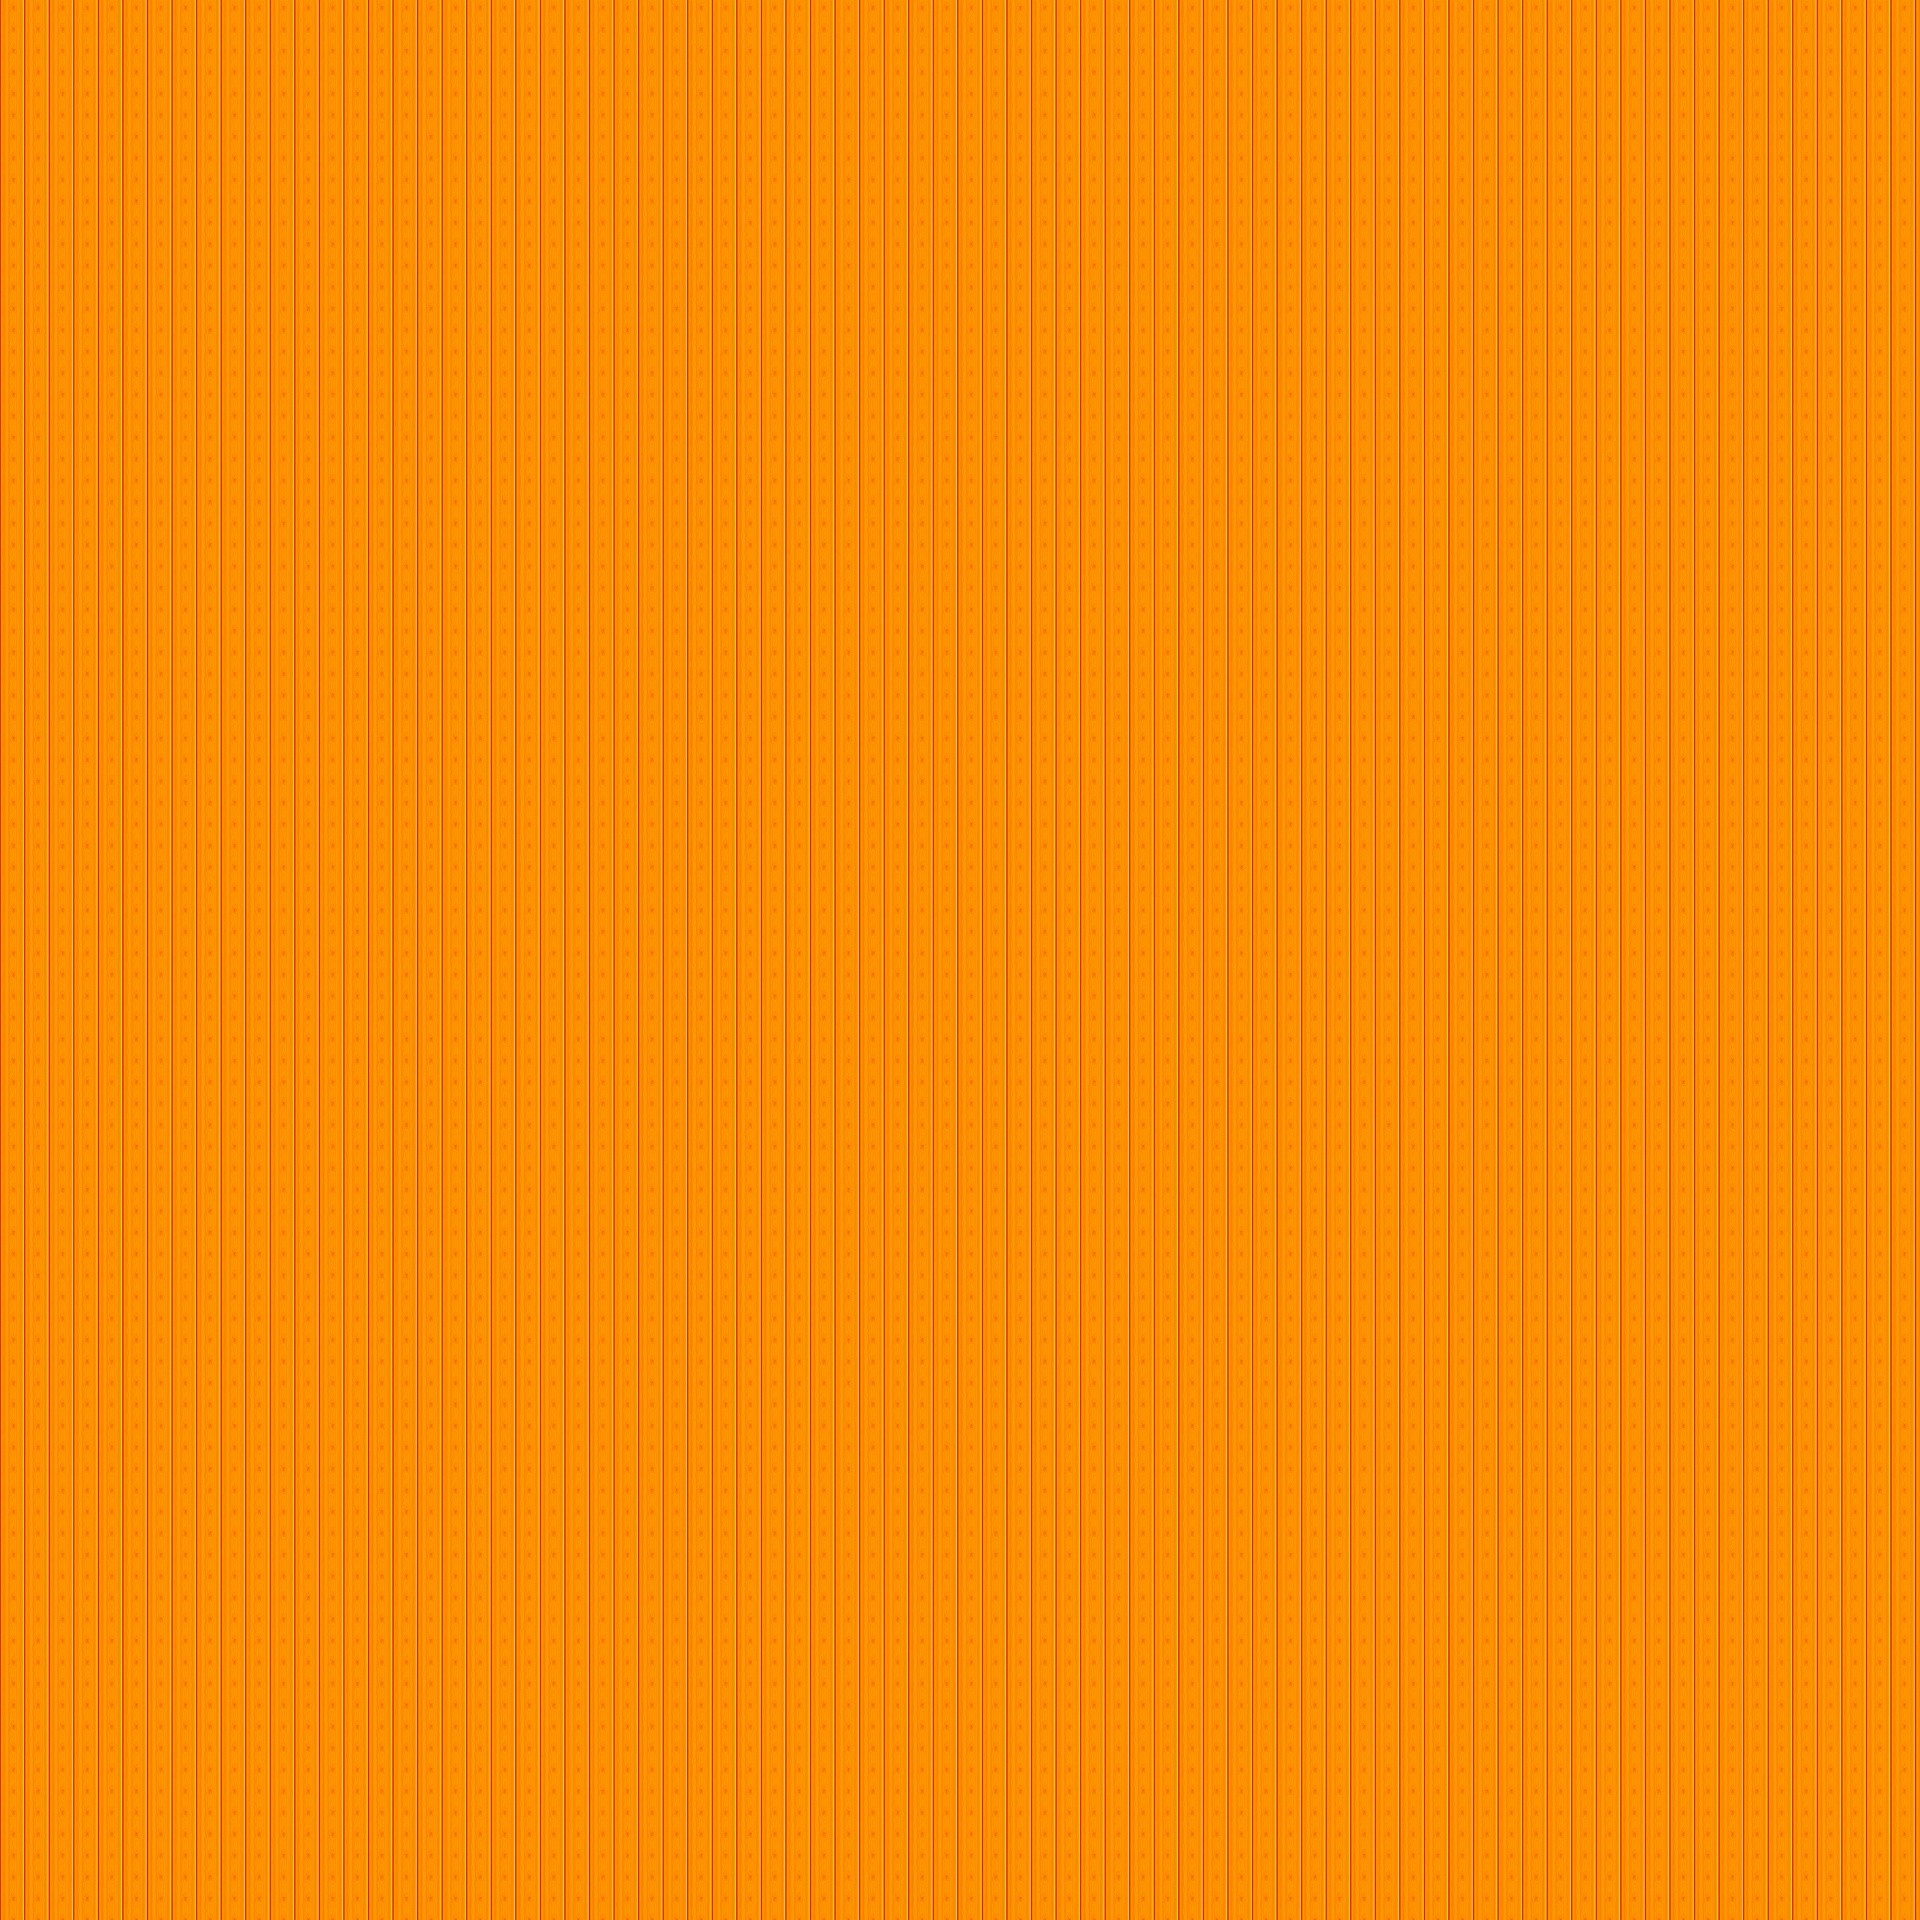 1920x1920 Orange Wallpaper Background